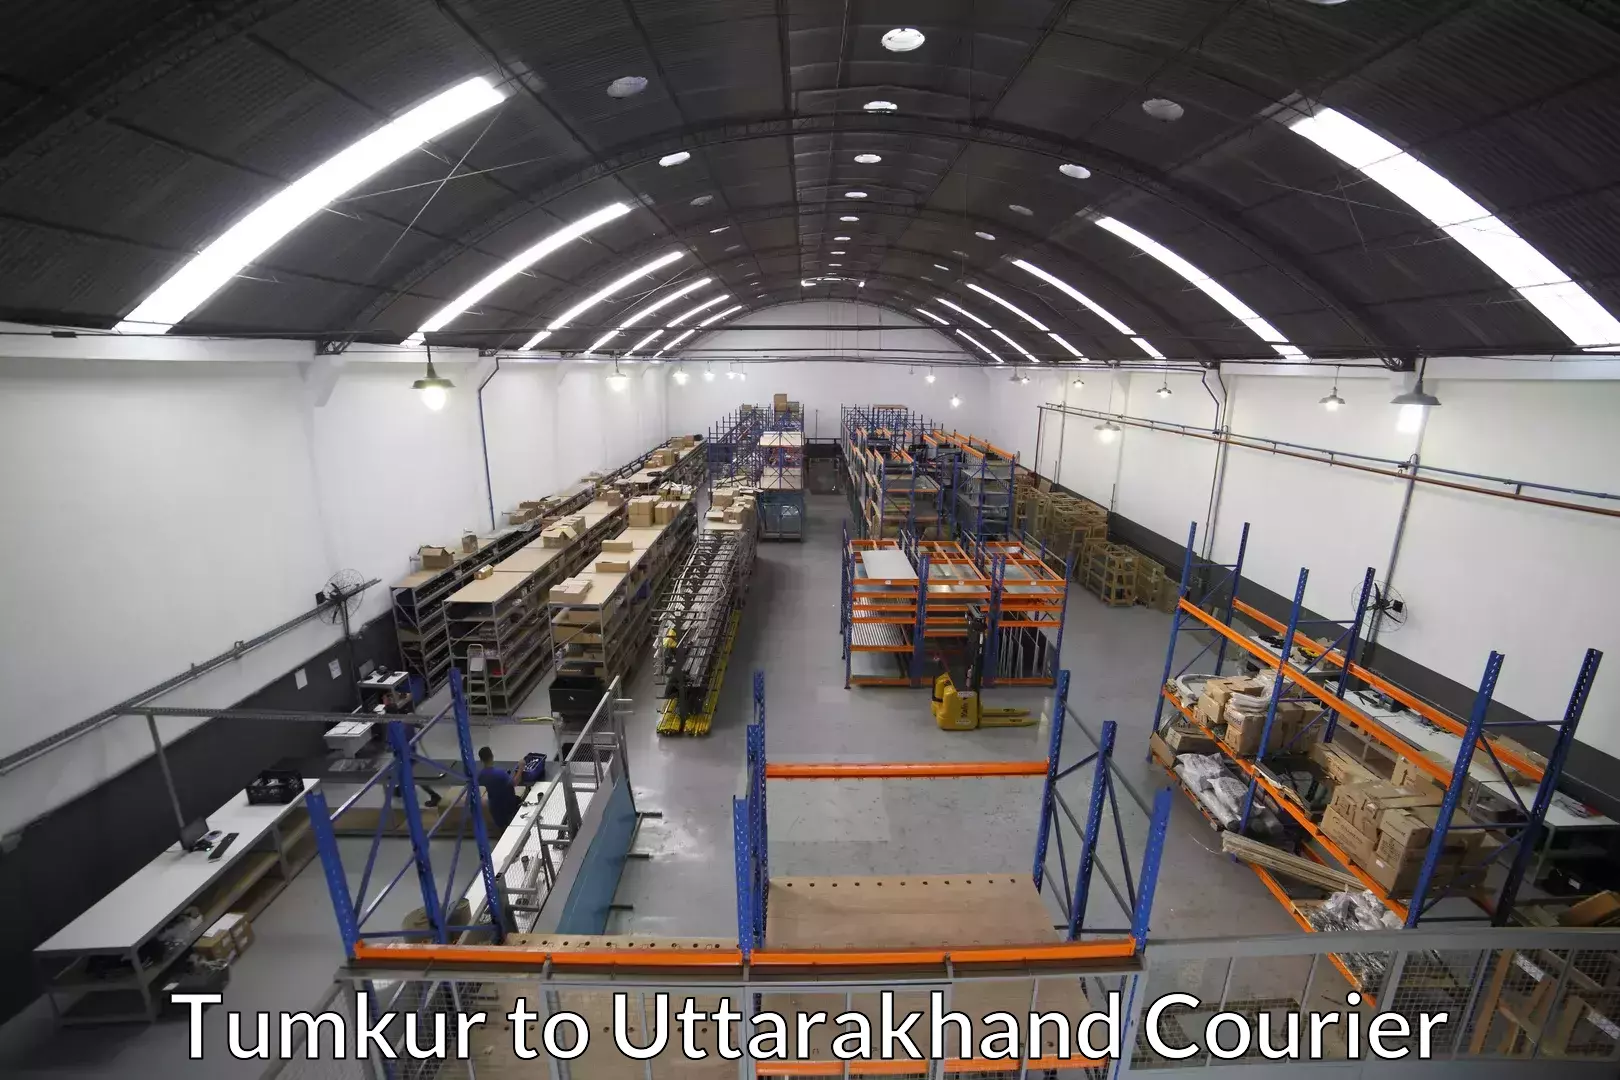 Furniture moving assistance Tumkur to Uttarakhand